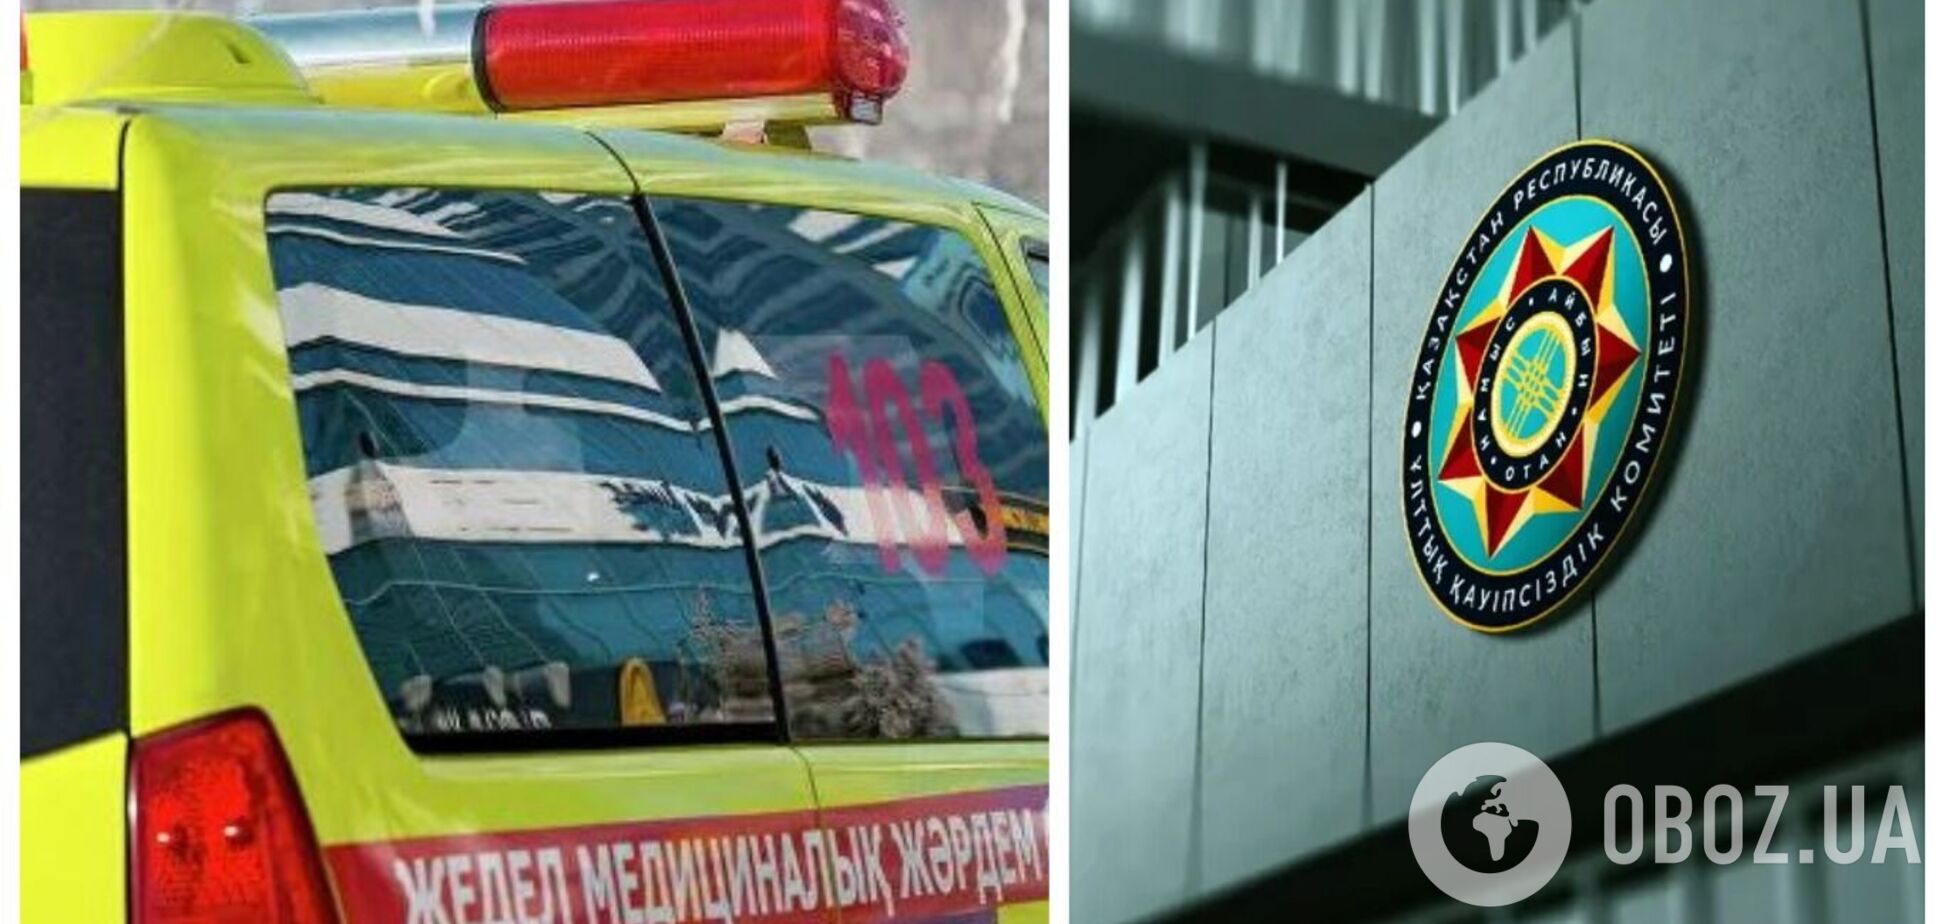 Полковник Комитета нацбезопасности Казахстана найден мертвым: погиб при странных обстоятельствах